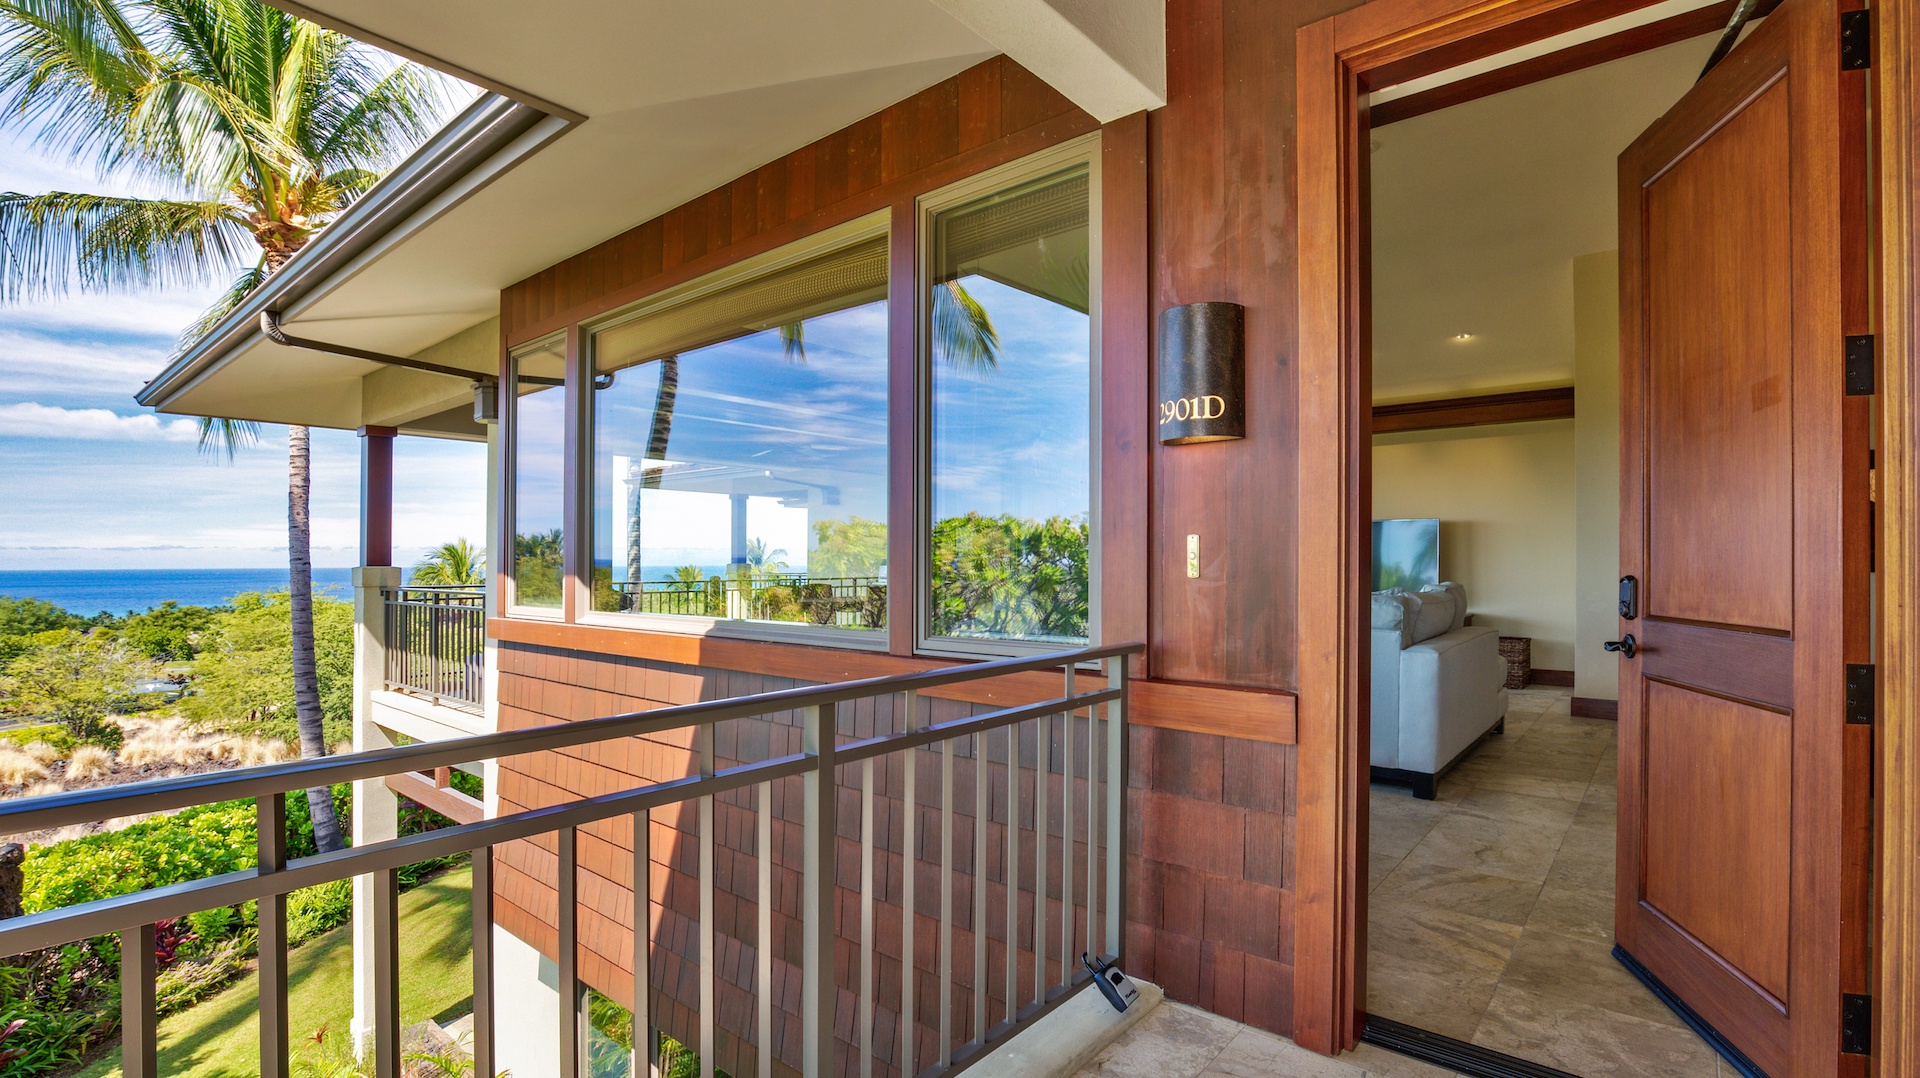 Kailua Kona Vacation Rentals, 3BD Hainoa Villa (2901D) at Four Seasons Resort at Hualalai - Elegant villa entrance - welcome to paradise!